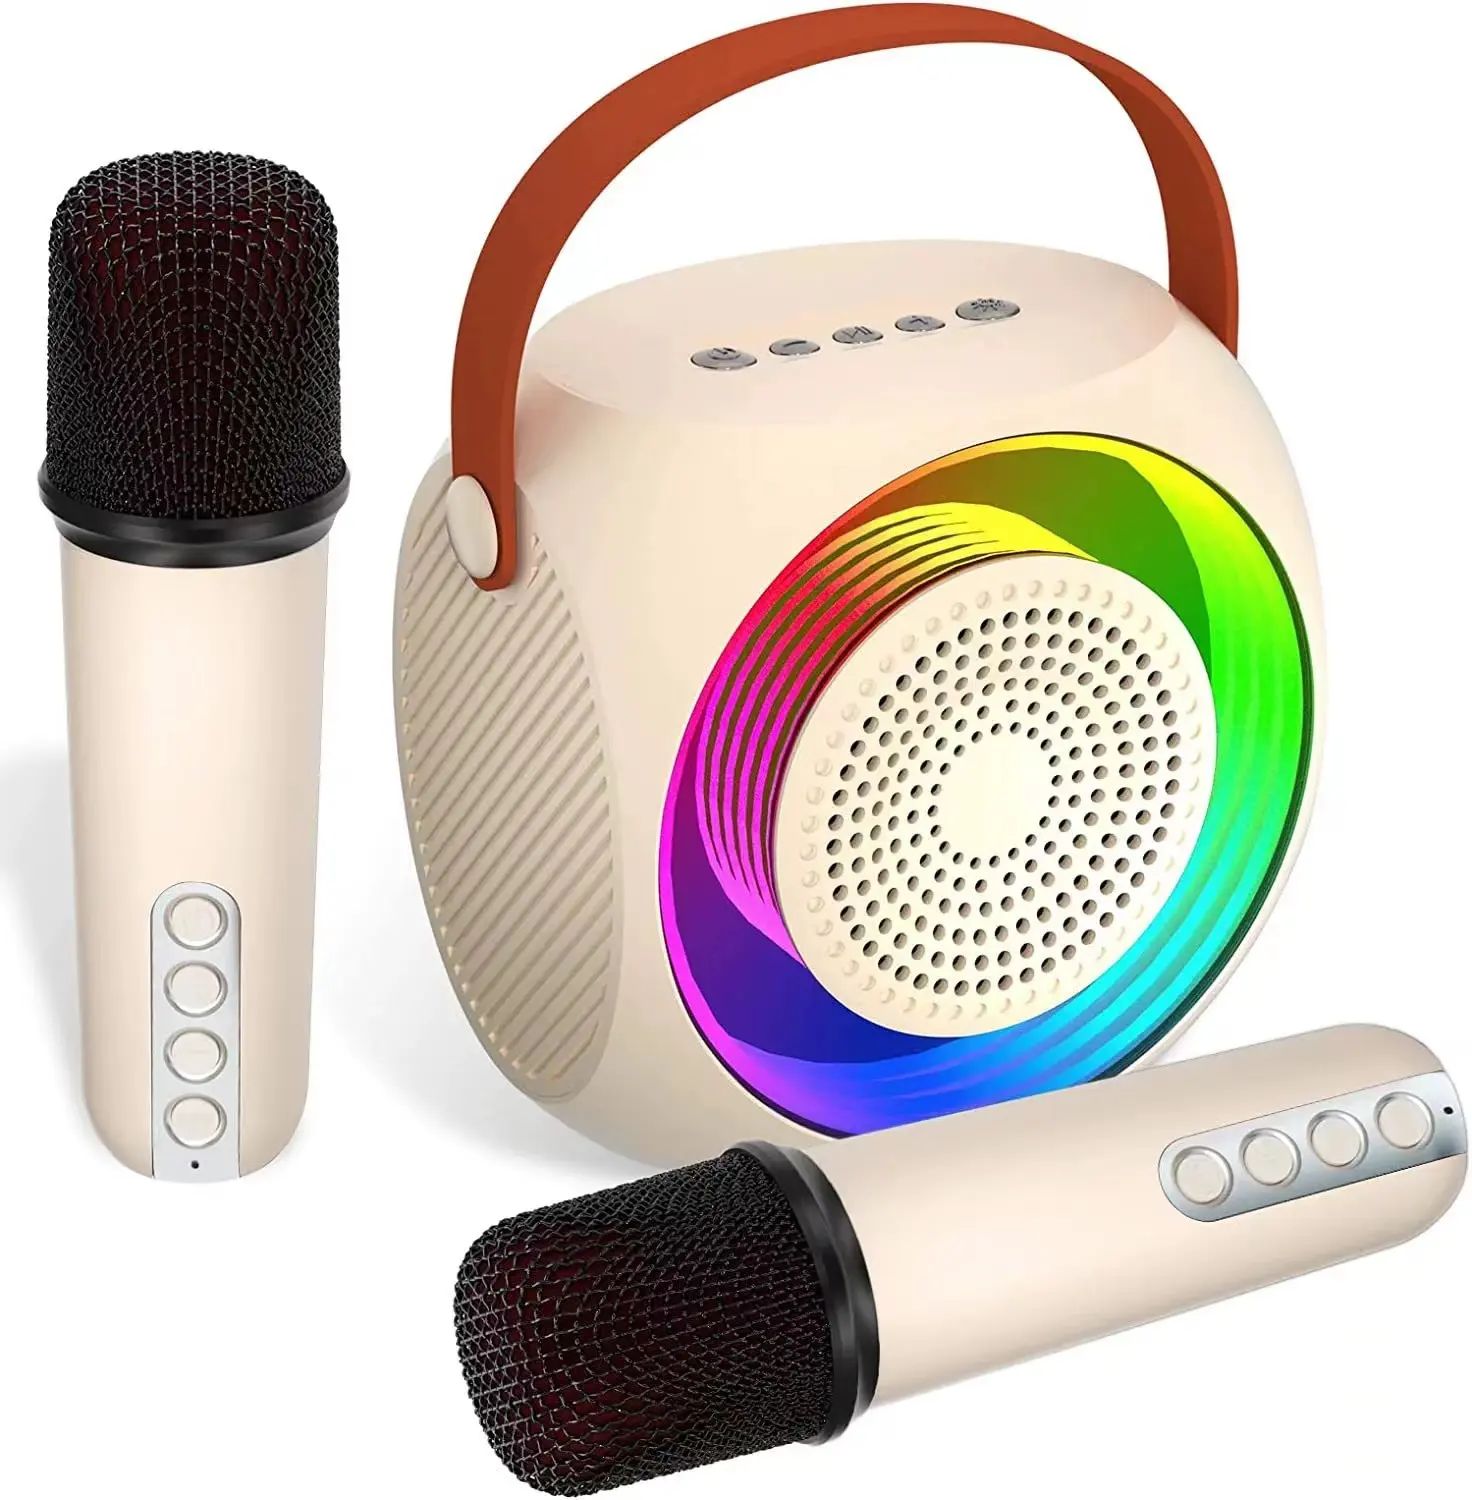 Microphone karaoké portable pour enfants L2 d'usine haut-parleur BT support carte tf/Aux/BT stéréo boom box cadeau de Noël